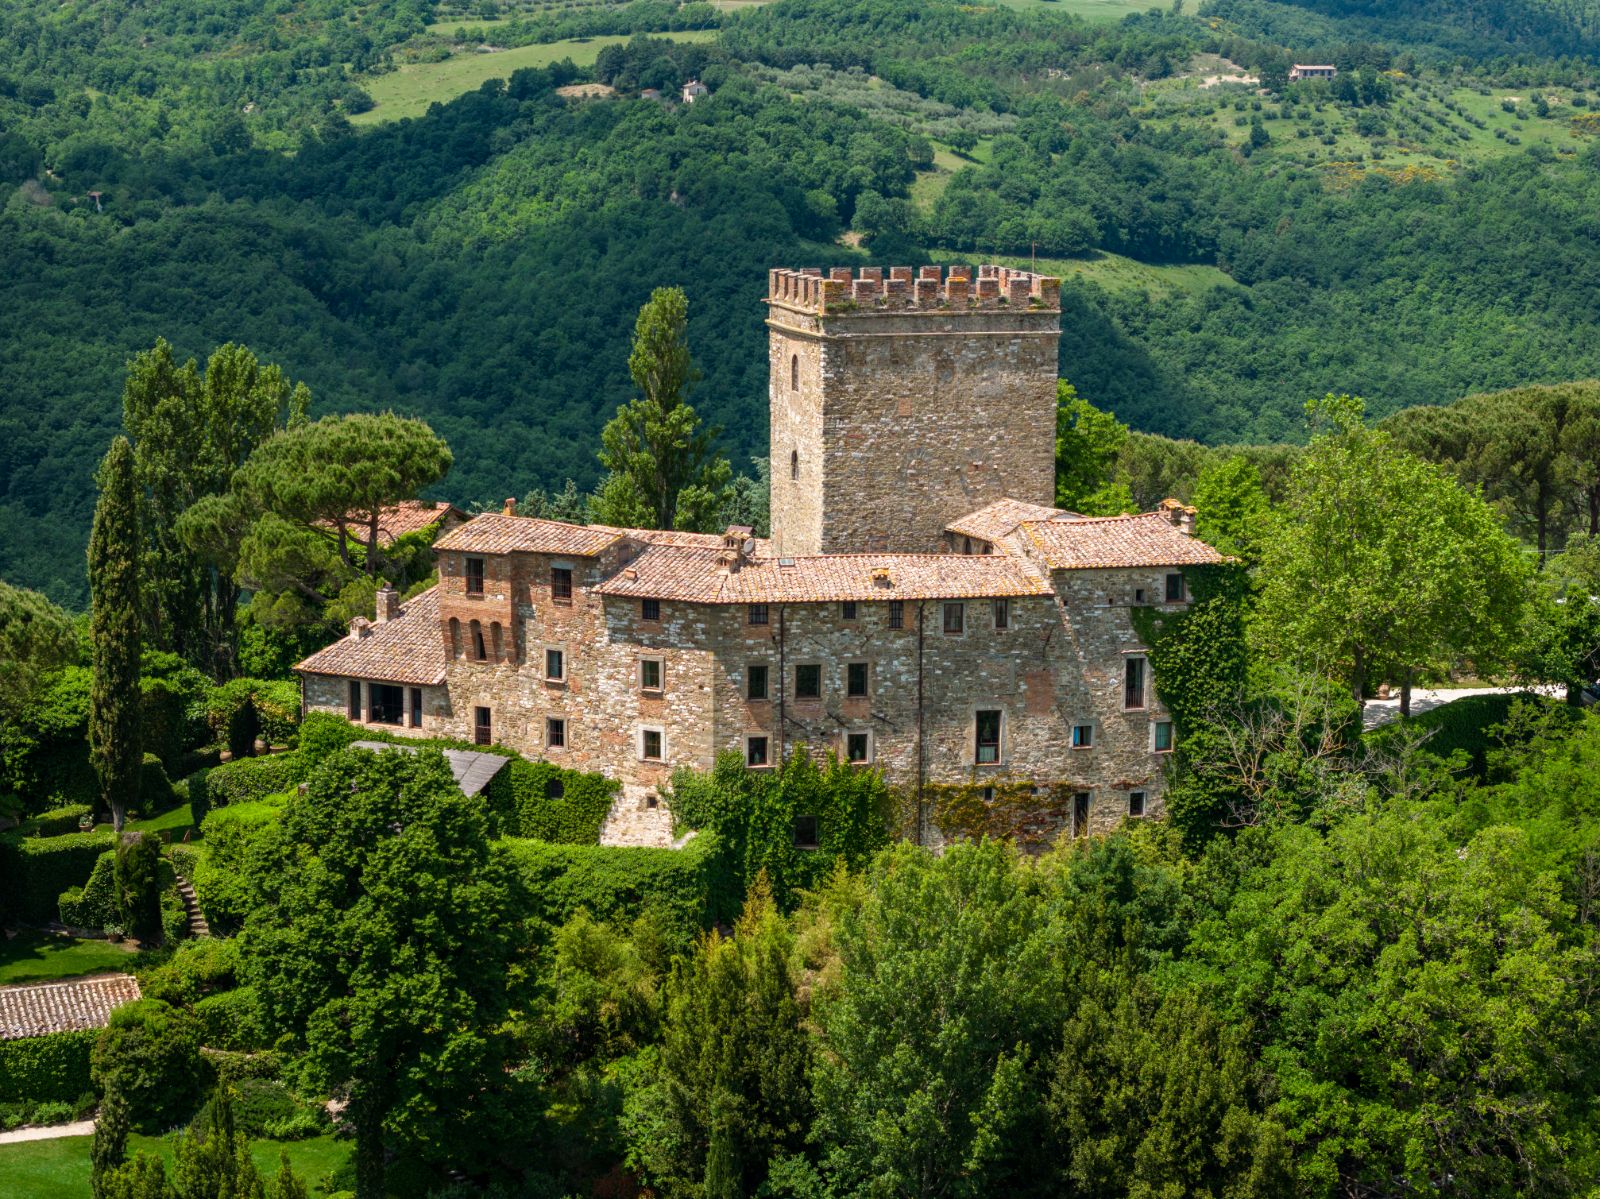 View 2 Castello di Polgeto in Umbria